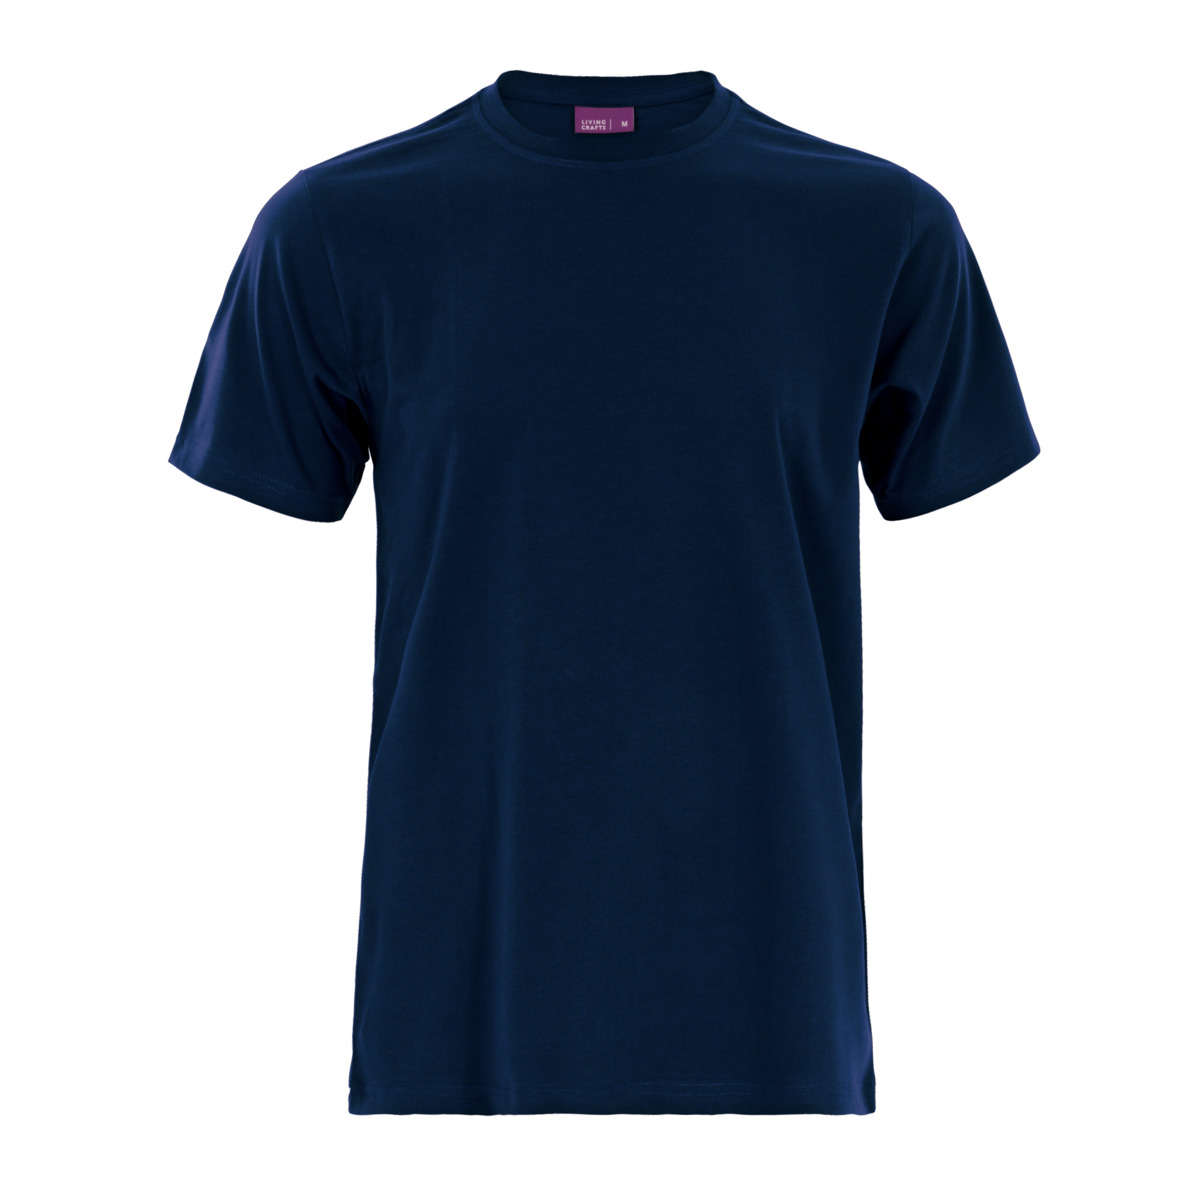 Blue T-shirt, CLARK